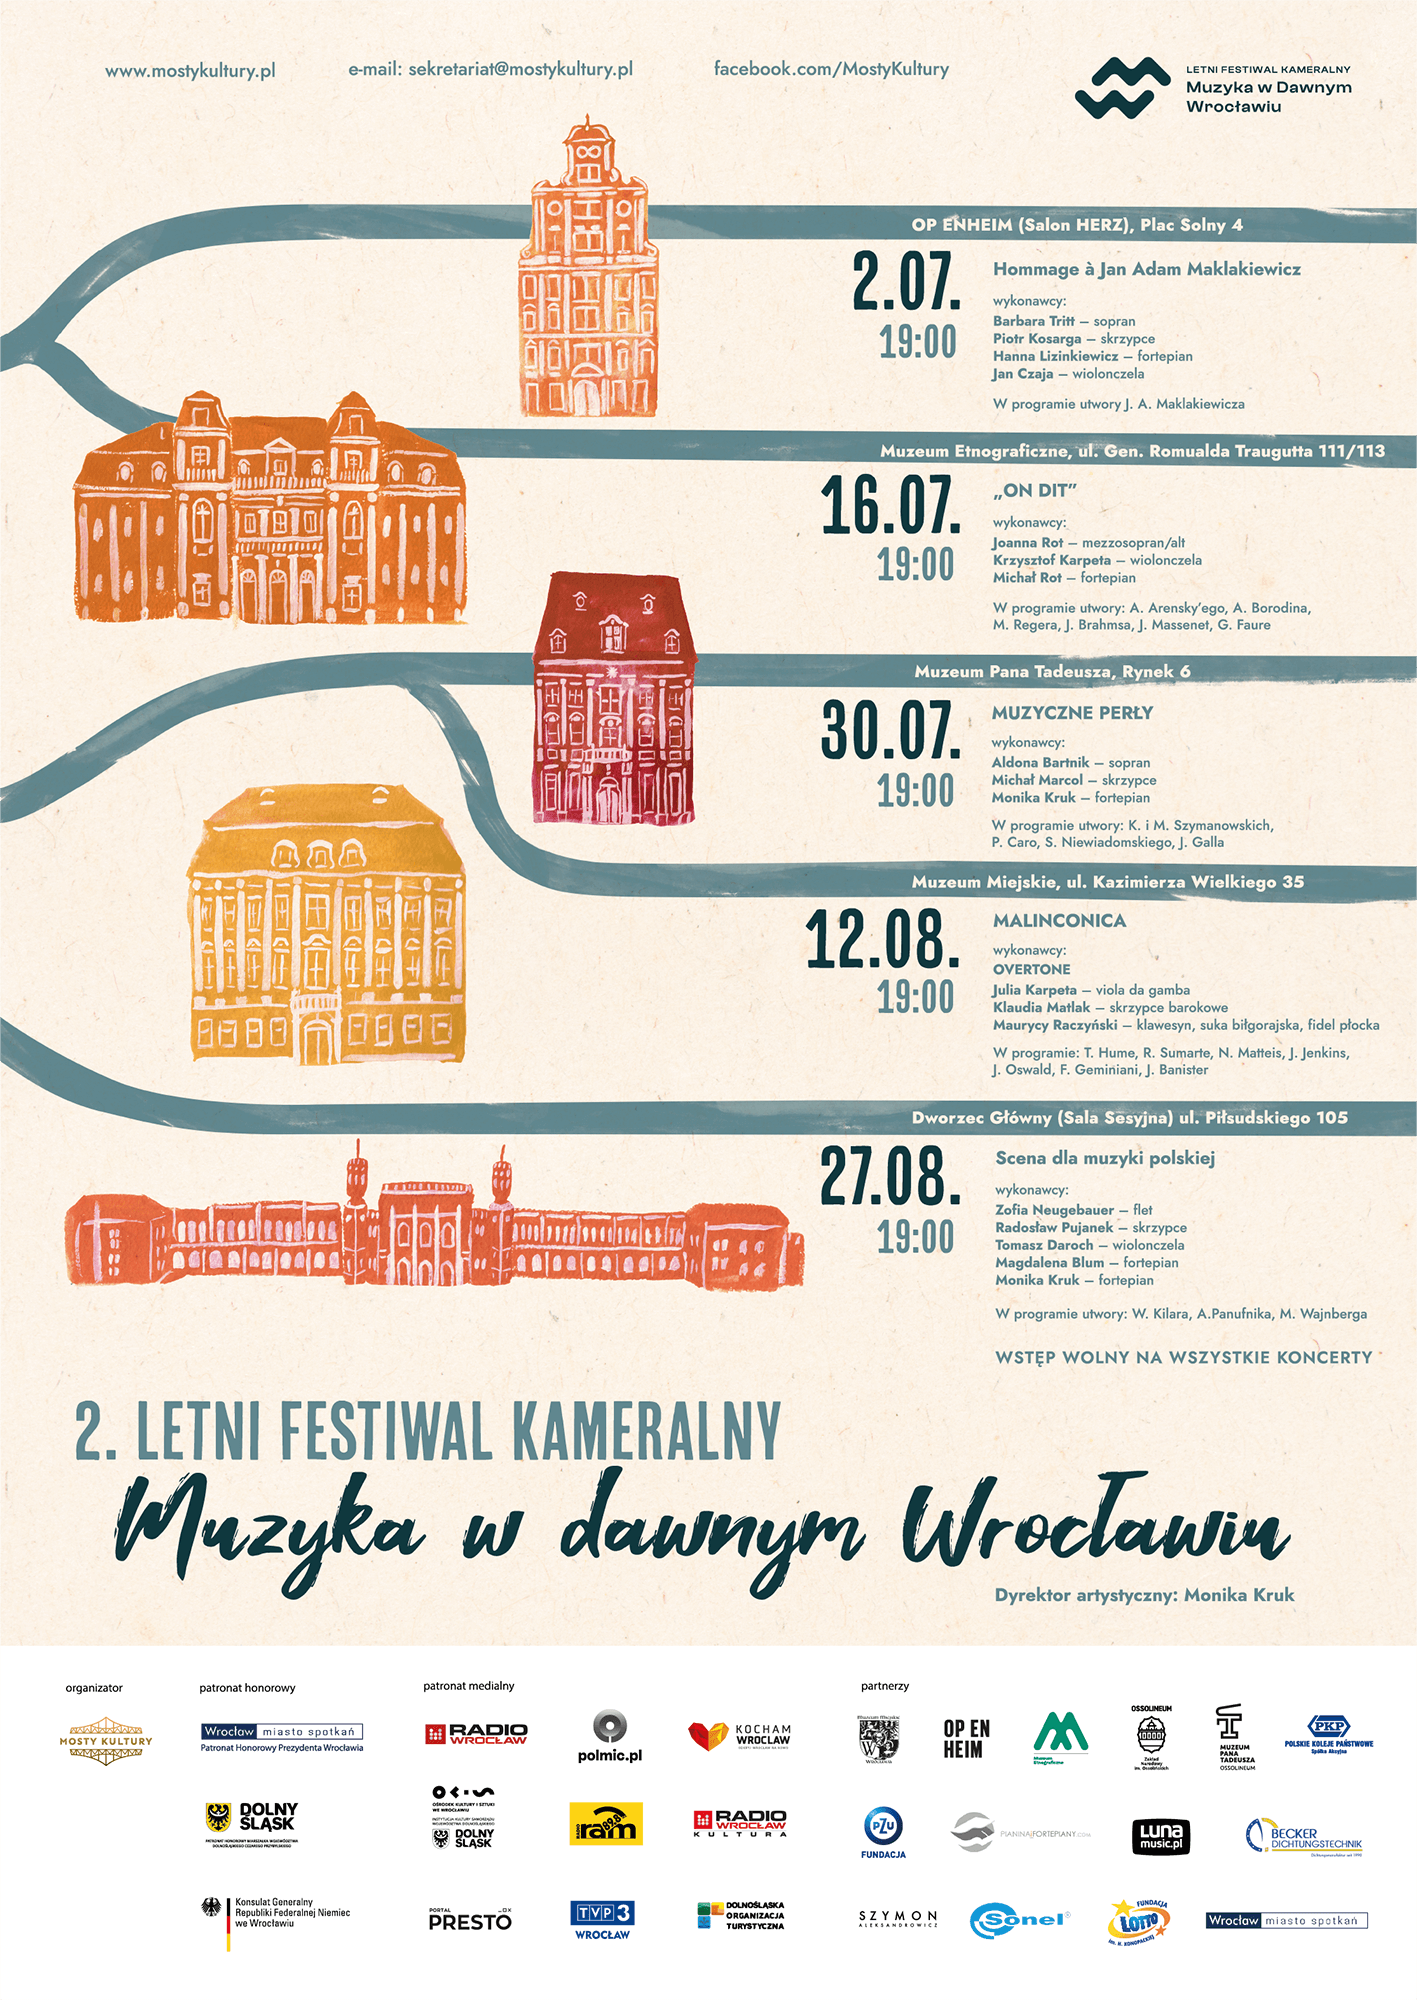 2. Letni Festiwal Kameralny „Muzyka w dawnym Wrocławiu”